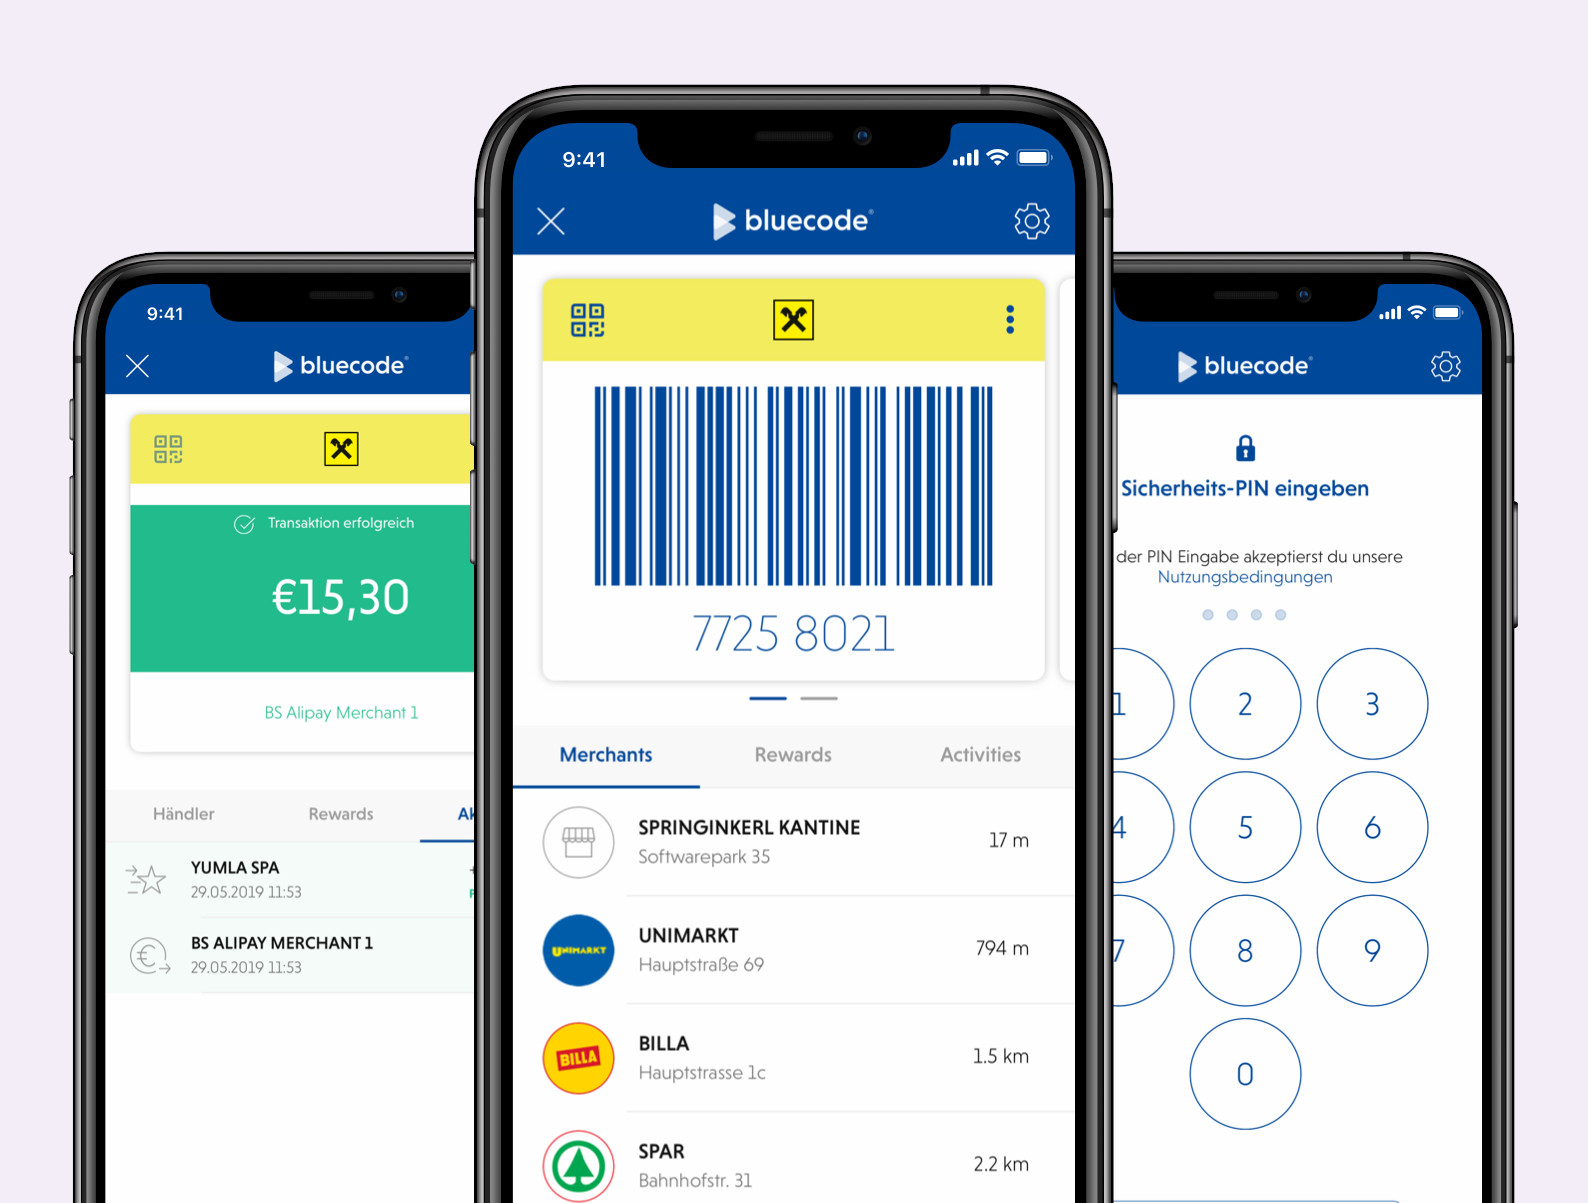 Bluecode ist die Mobile-Payment-Lösung, die berührungsloses Bezahlen per Smartphone mit digitalen Mehrwertservices verbindet und das Bezahlen aus Händler- und Banking-Apps ermöglicht.